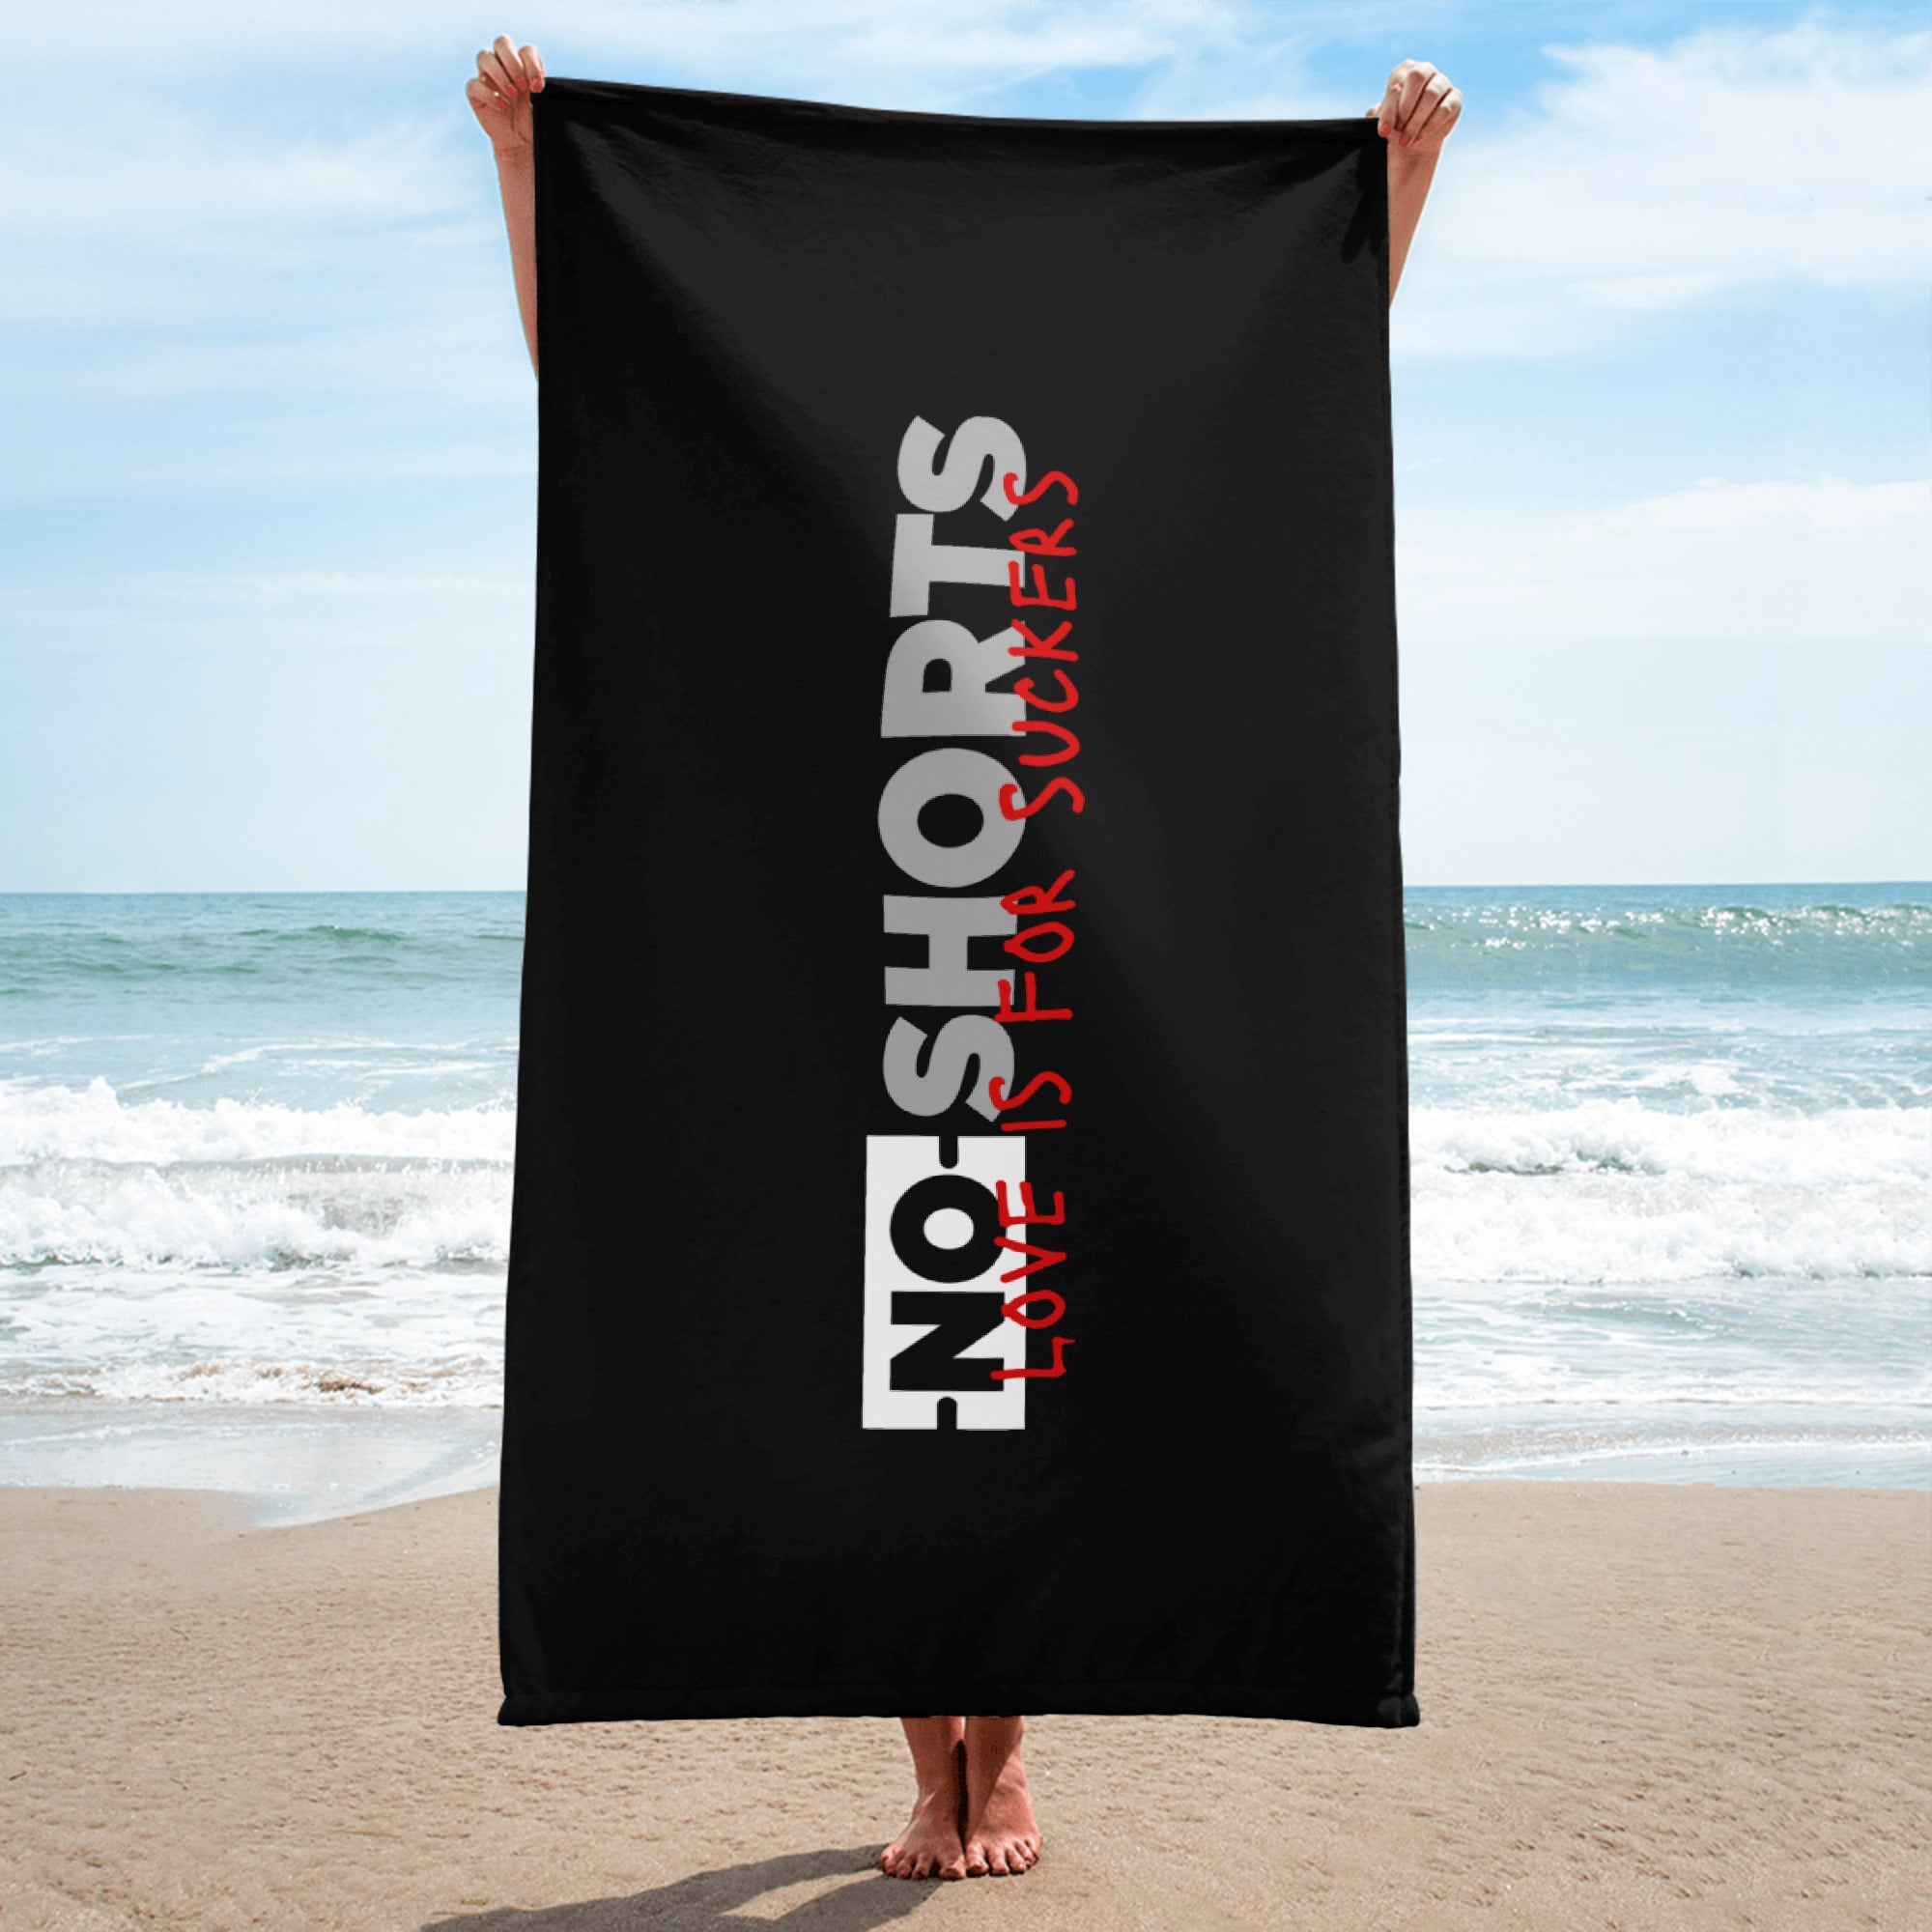 NO SHORTS "LIFS" Towel